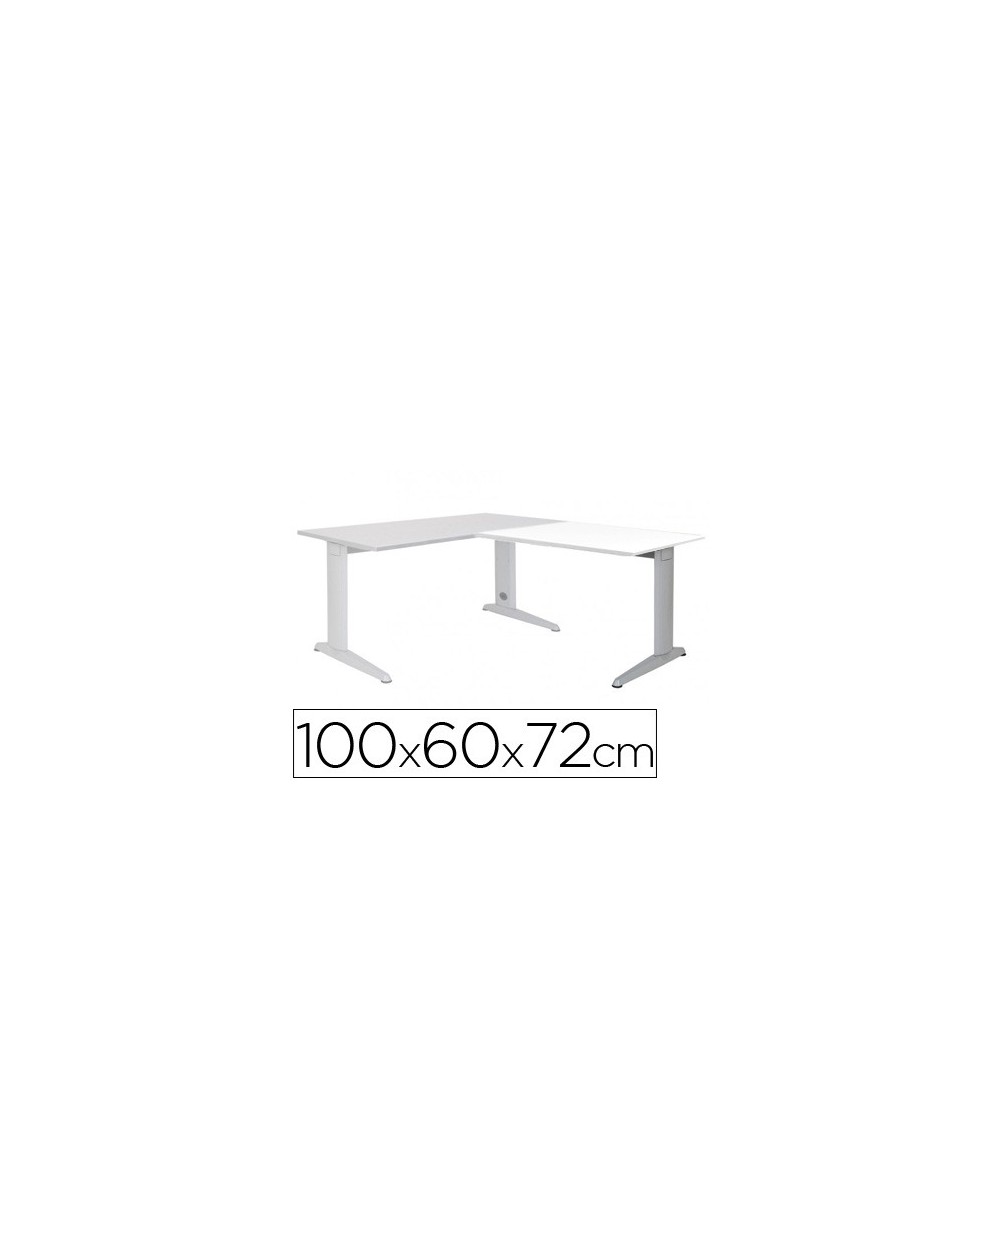 Ala para mesa rocada serie metal 60x 100 cm derecha o izquierda acabado ac04 aluminio blanco